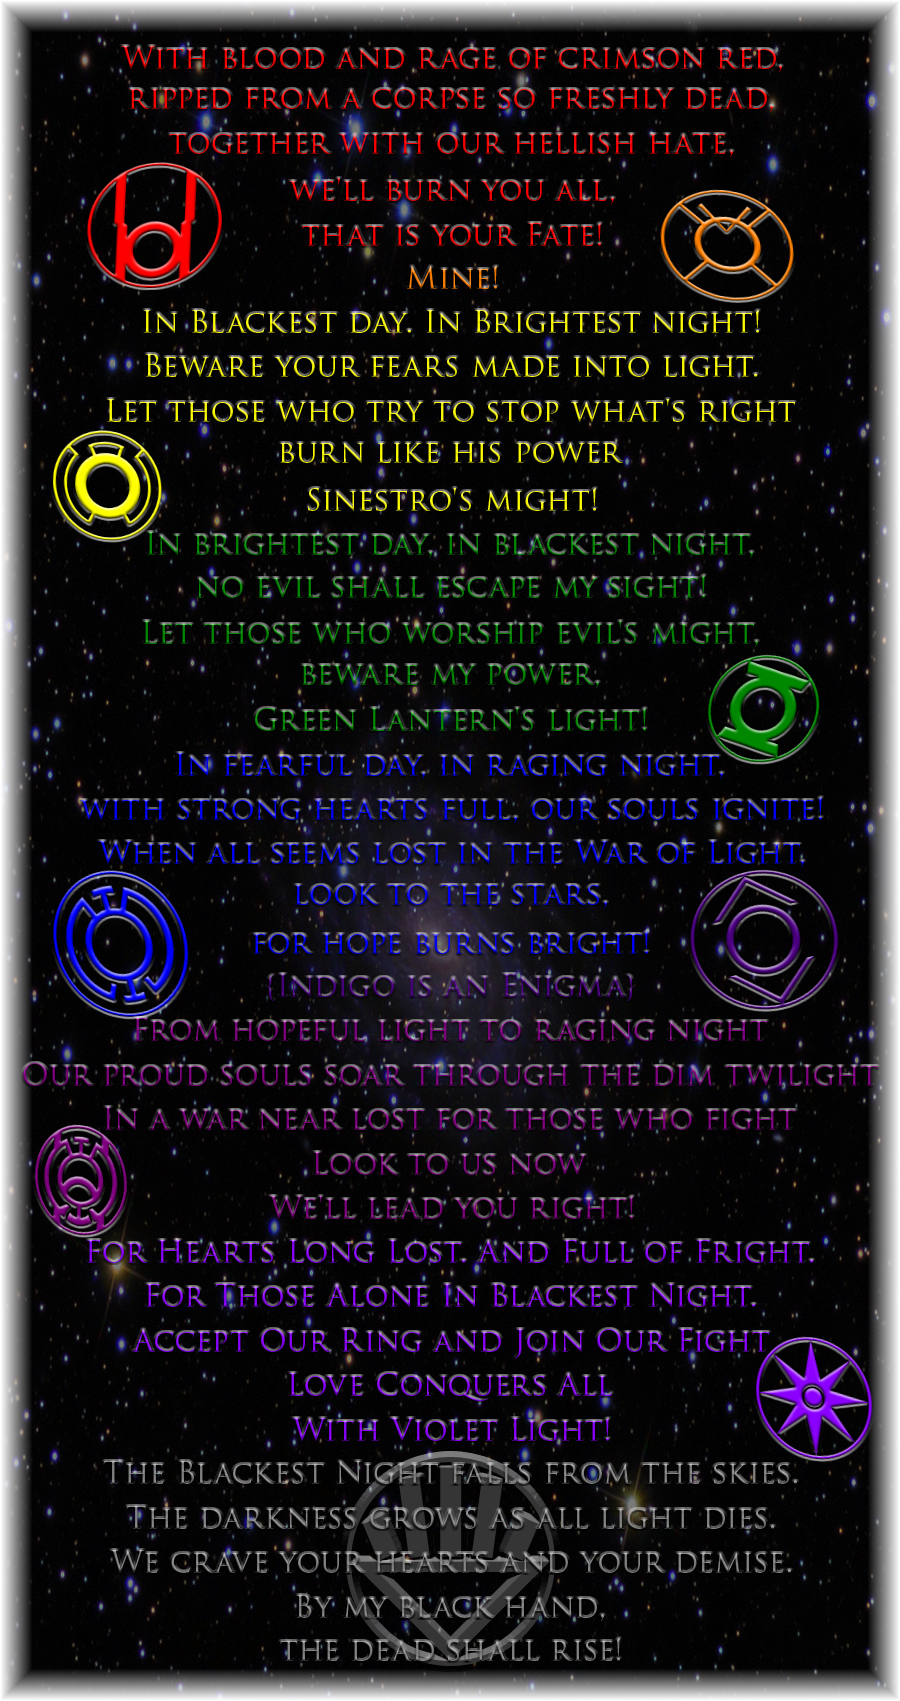 Green Lantern Corps Oath Wallpaper The lantern oaths by